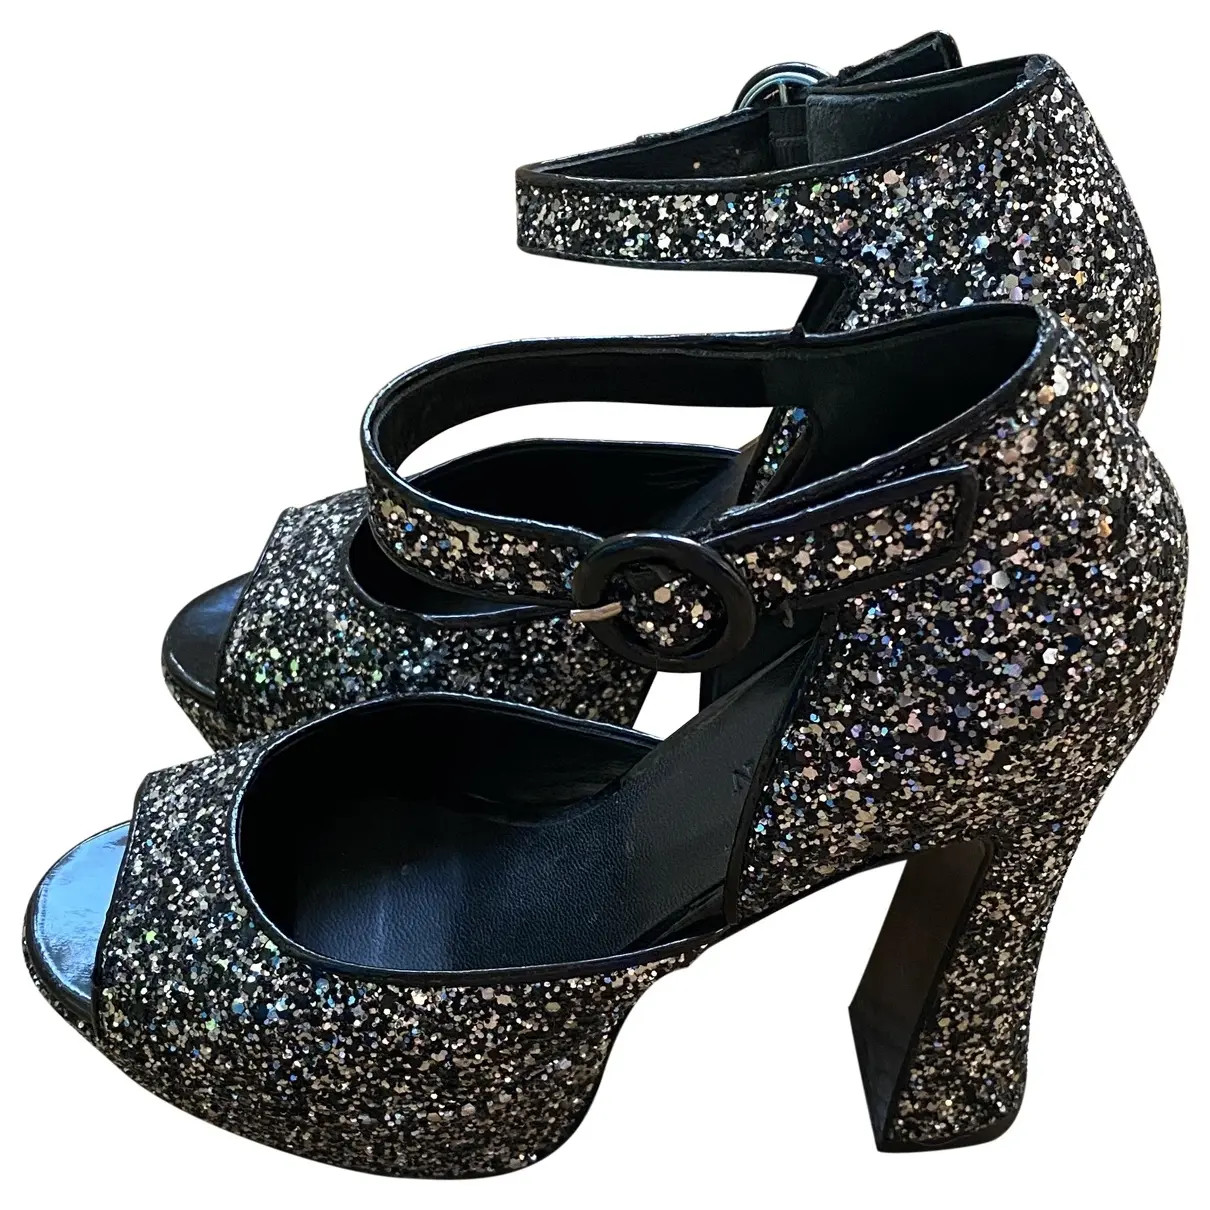 Glitter sandals Tara Jarmon